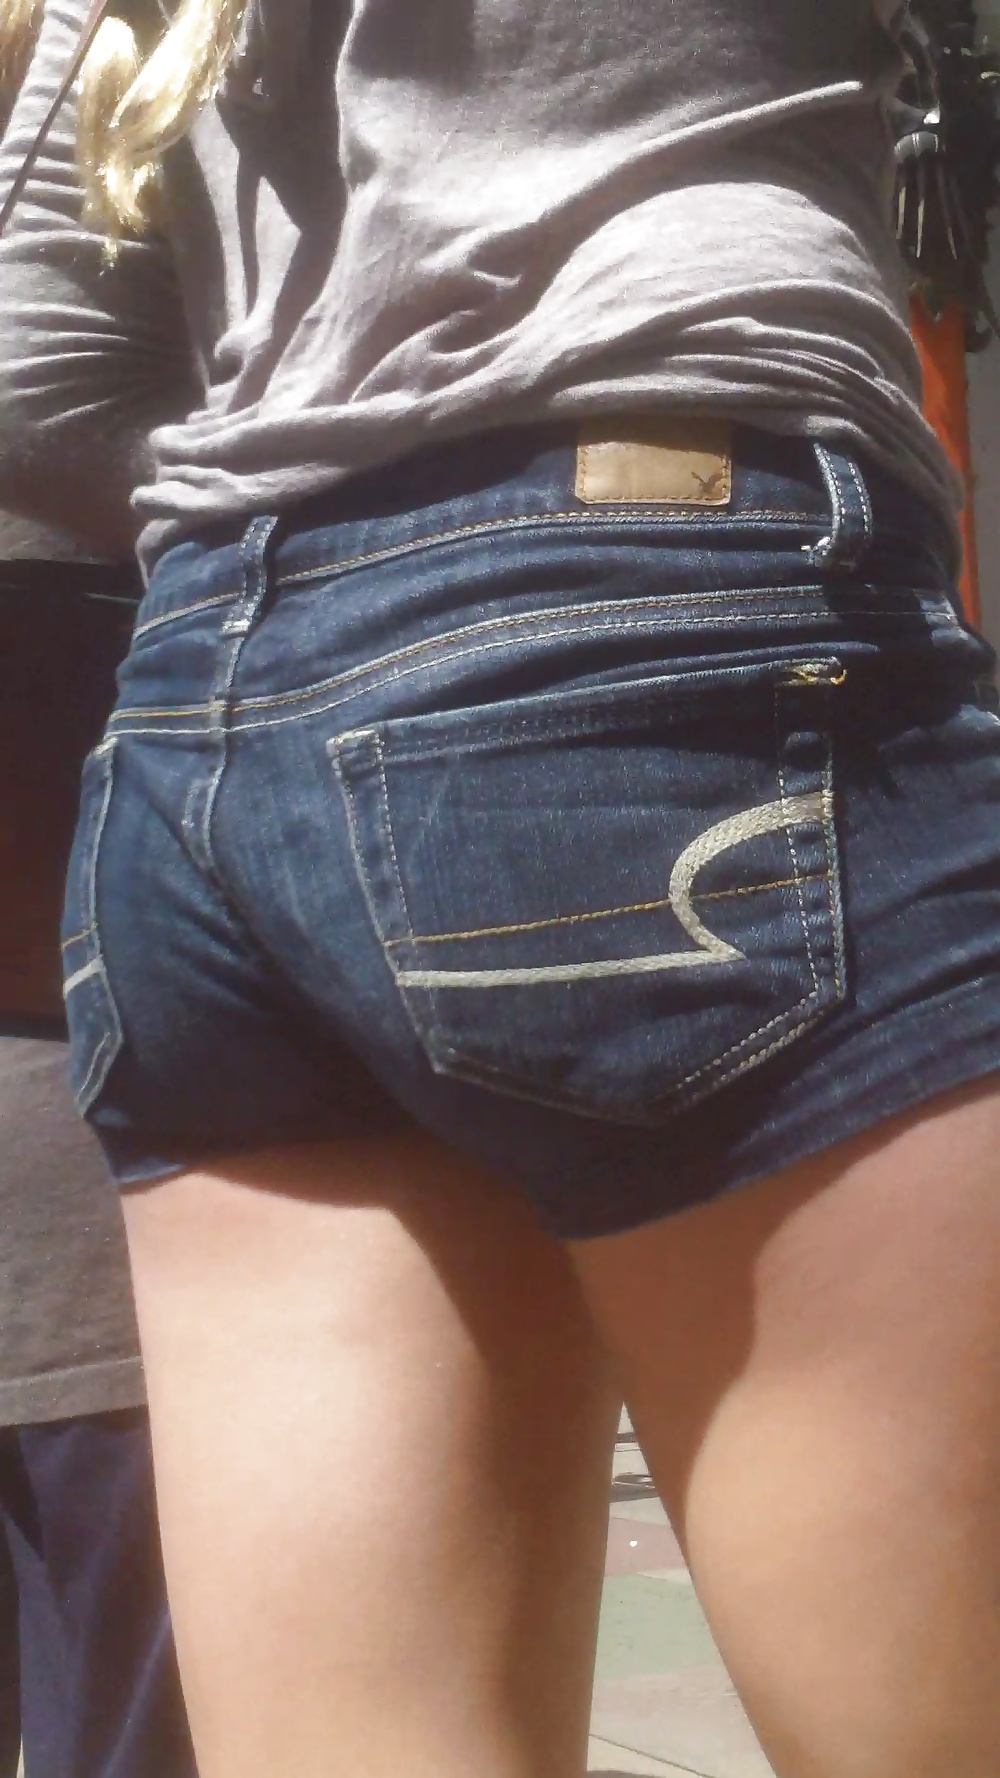 Popular teen girls ass & butt in jeans part 3 #25400541